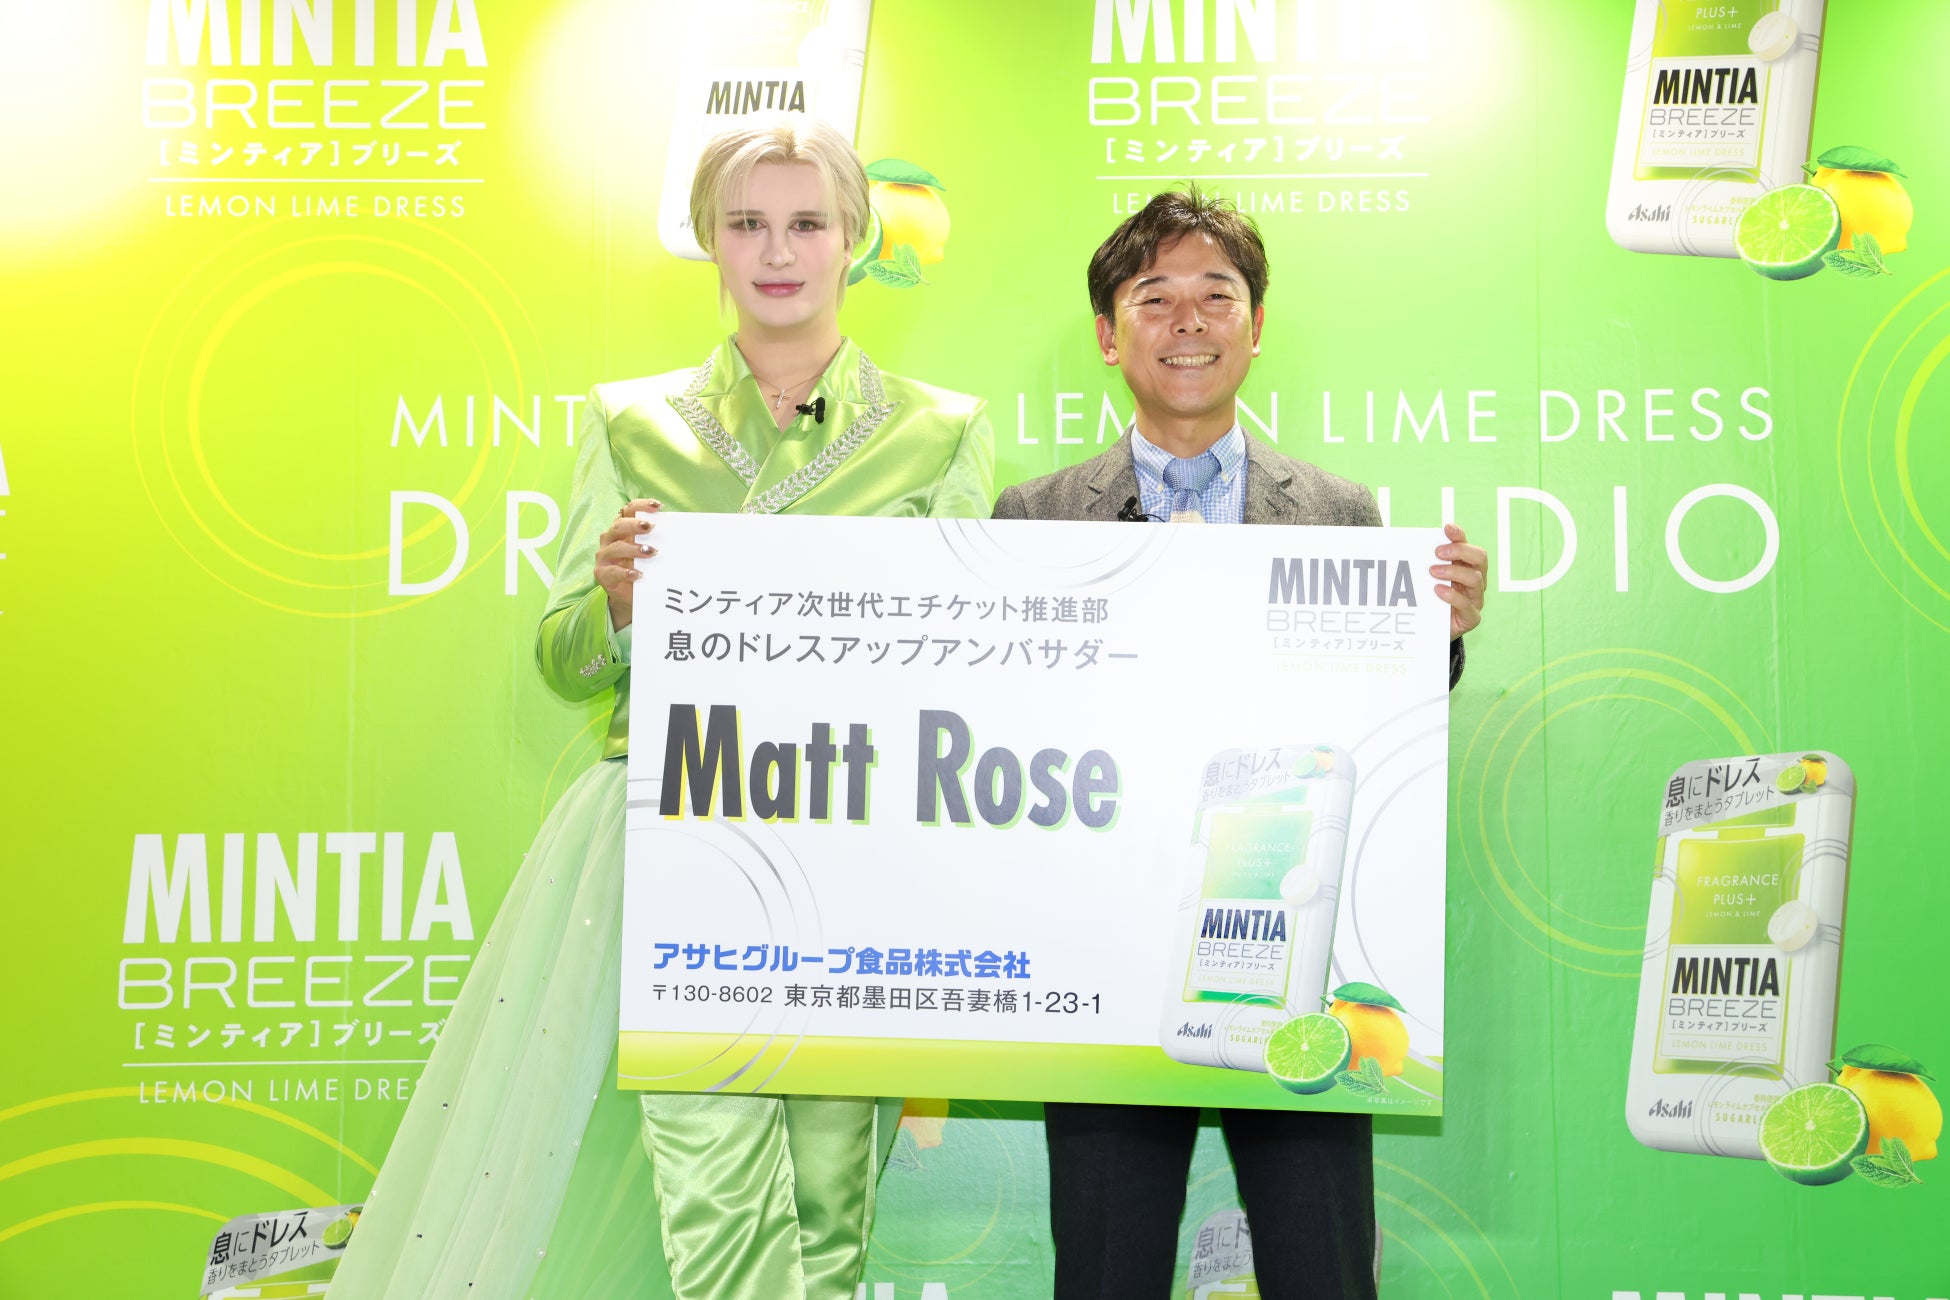 『ミンティアブリーズ レモンライムドレス』PR発表会開催息のドレスアップアンバサダー就任のMatt Roseさんが...